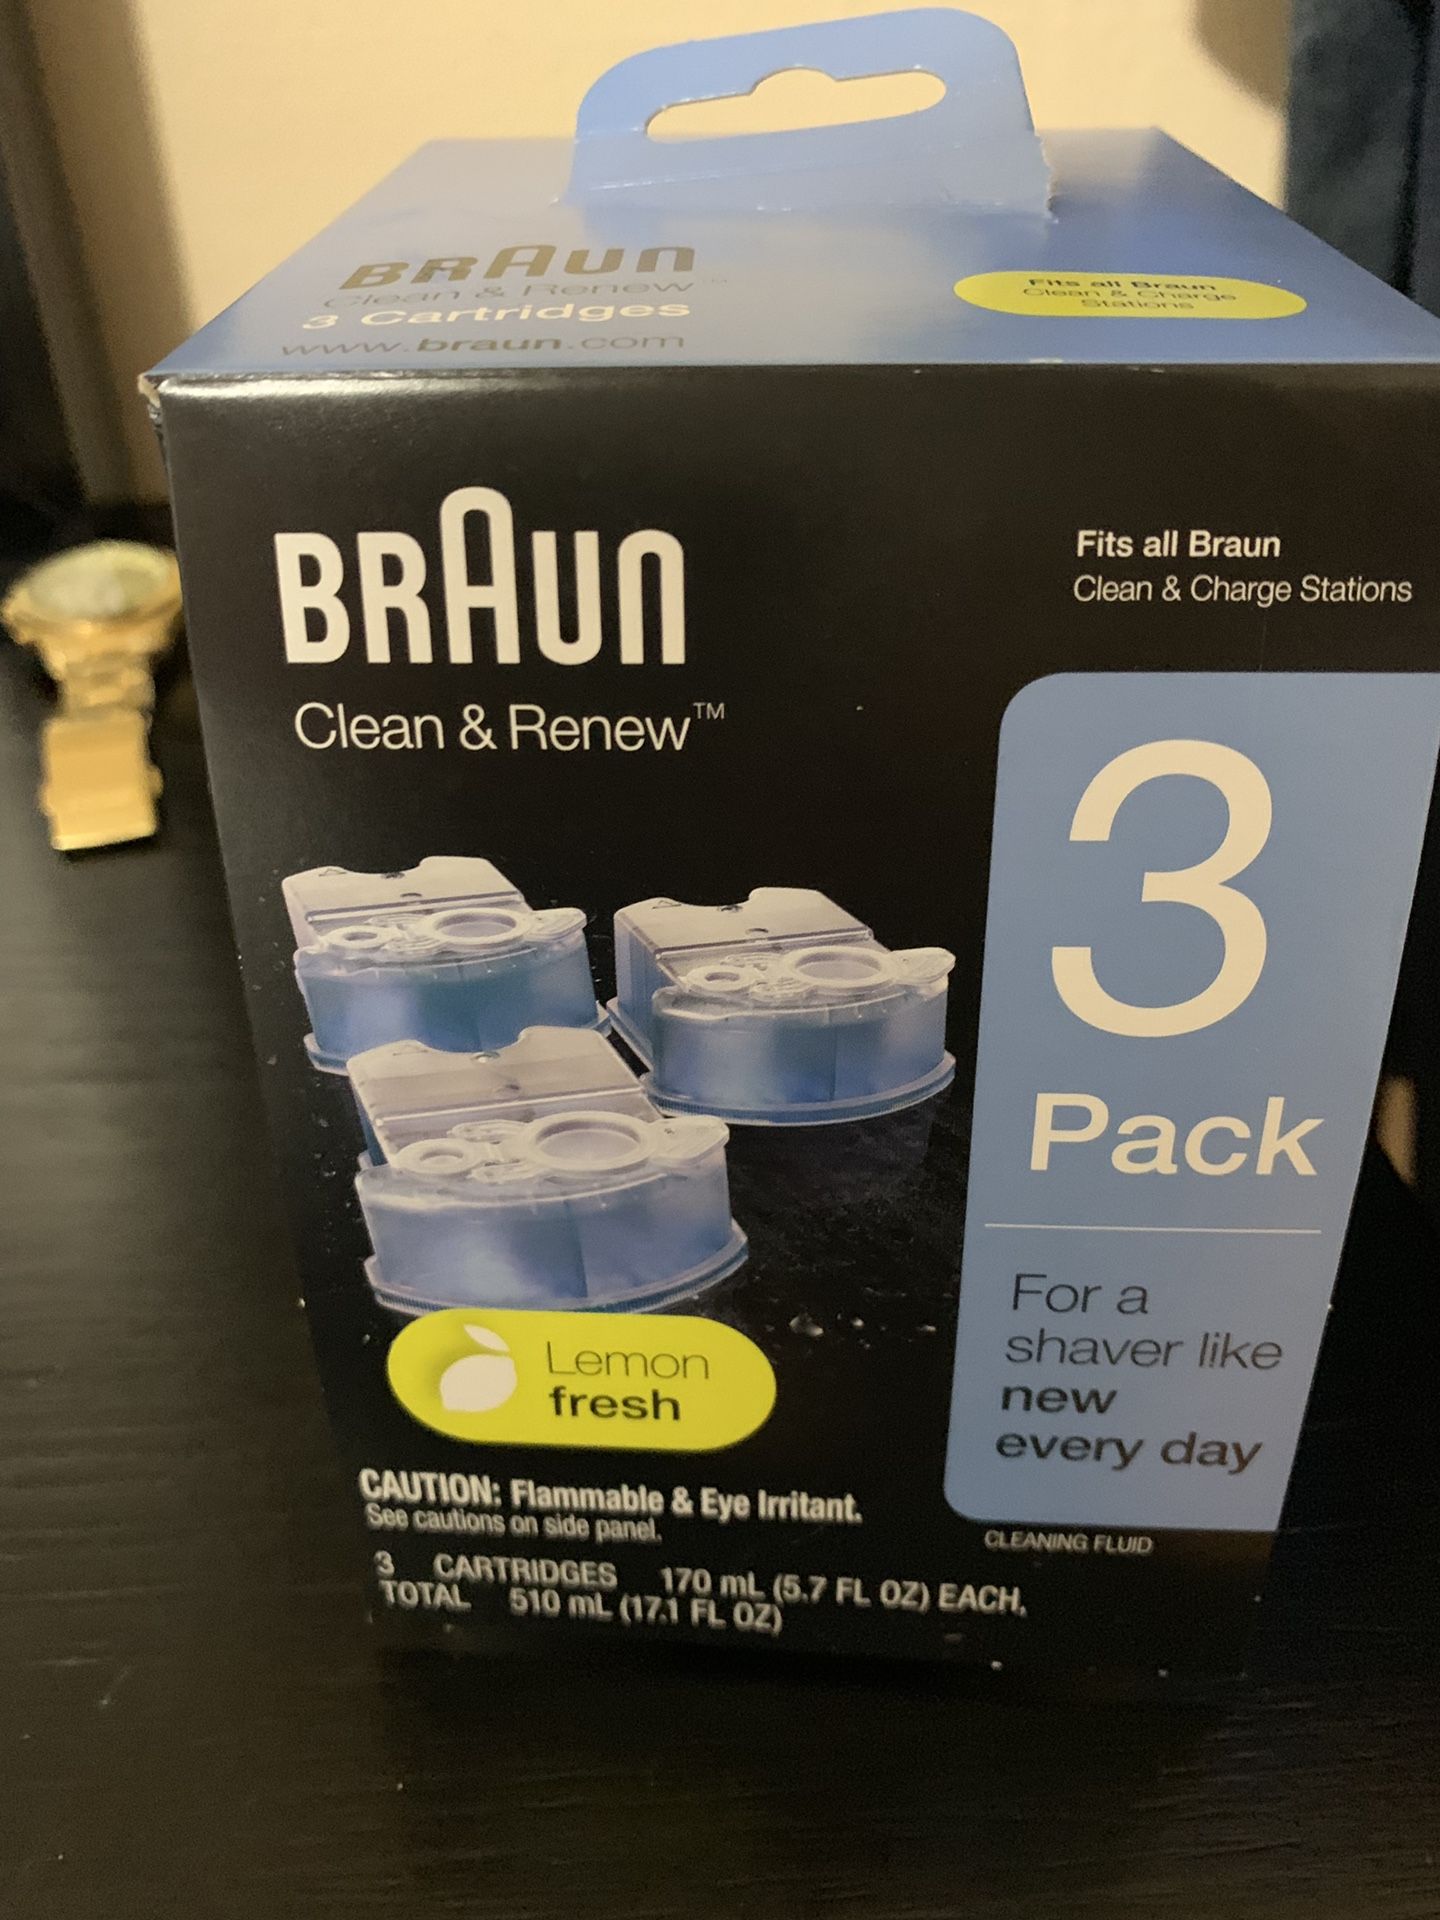 Shaved cleaner - Braun